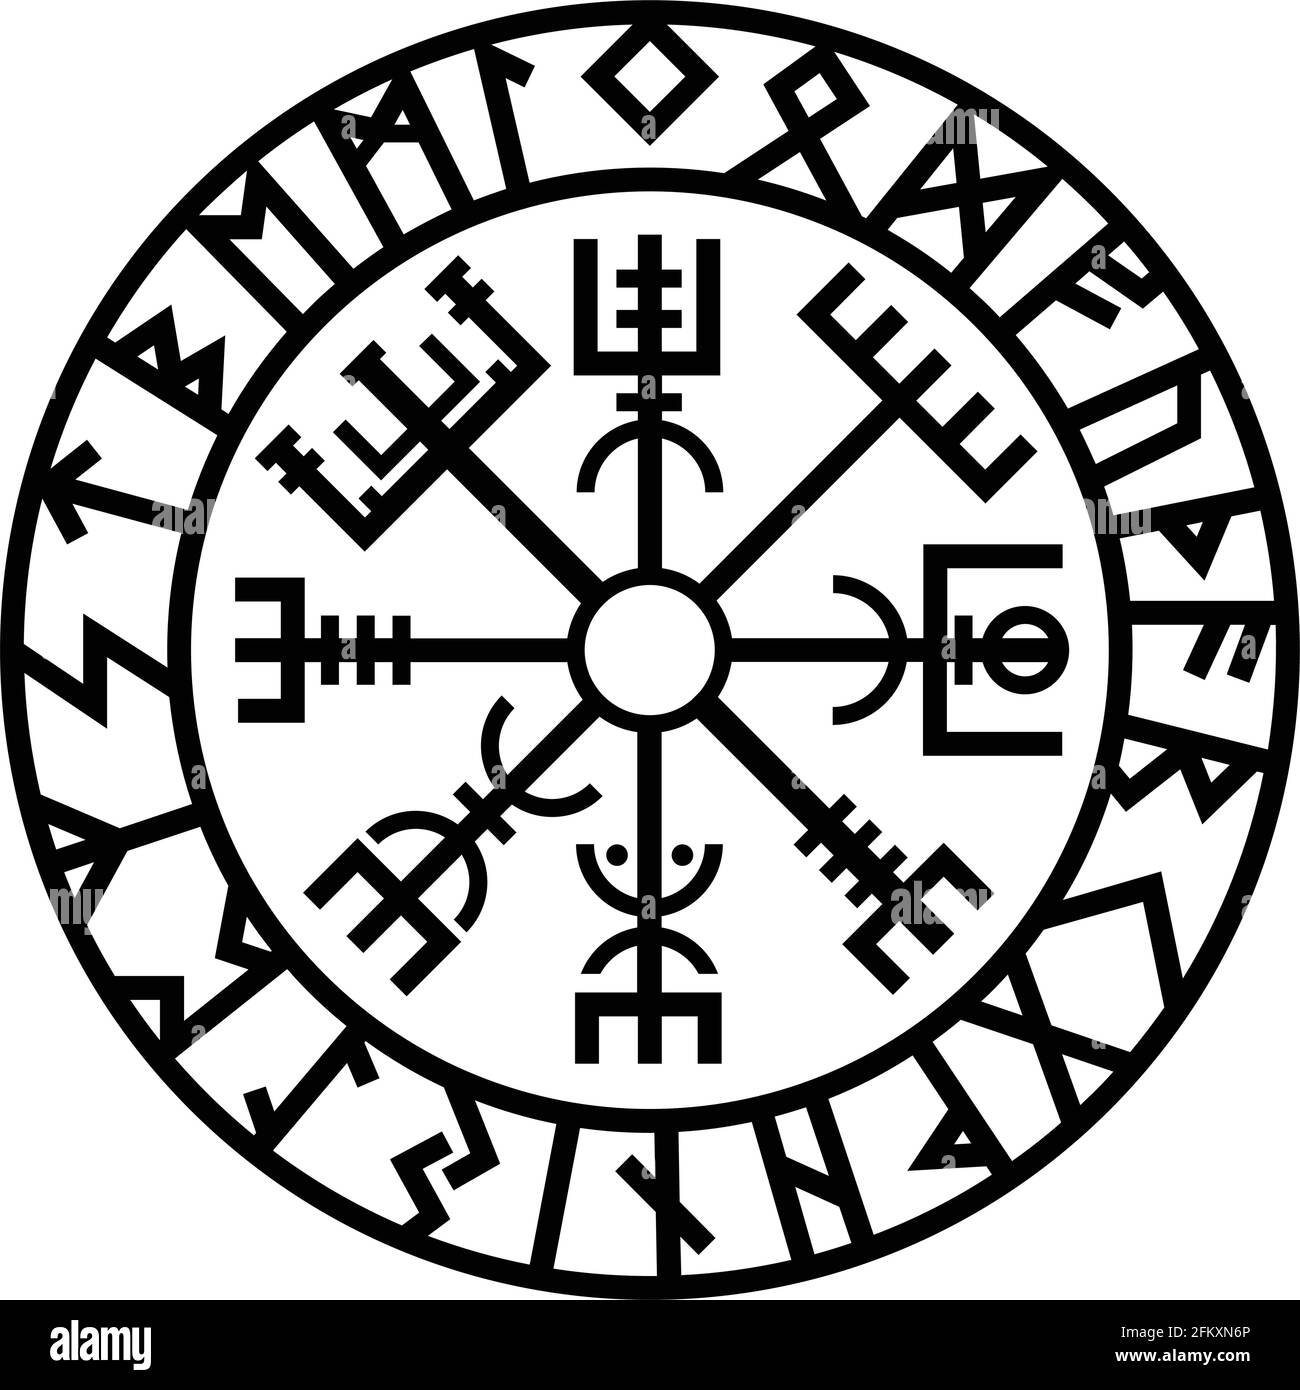 Wikinger symbole und ihre bedeutung